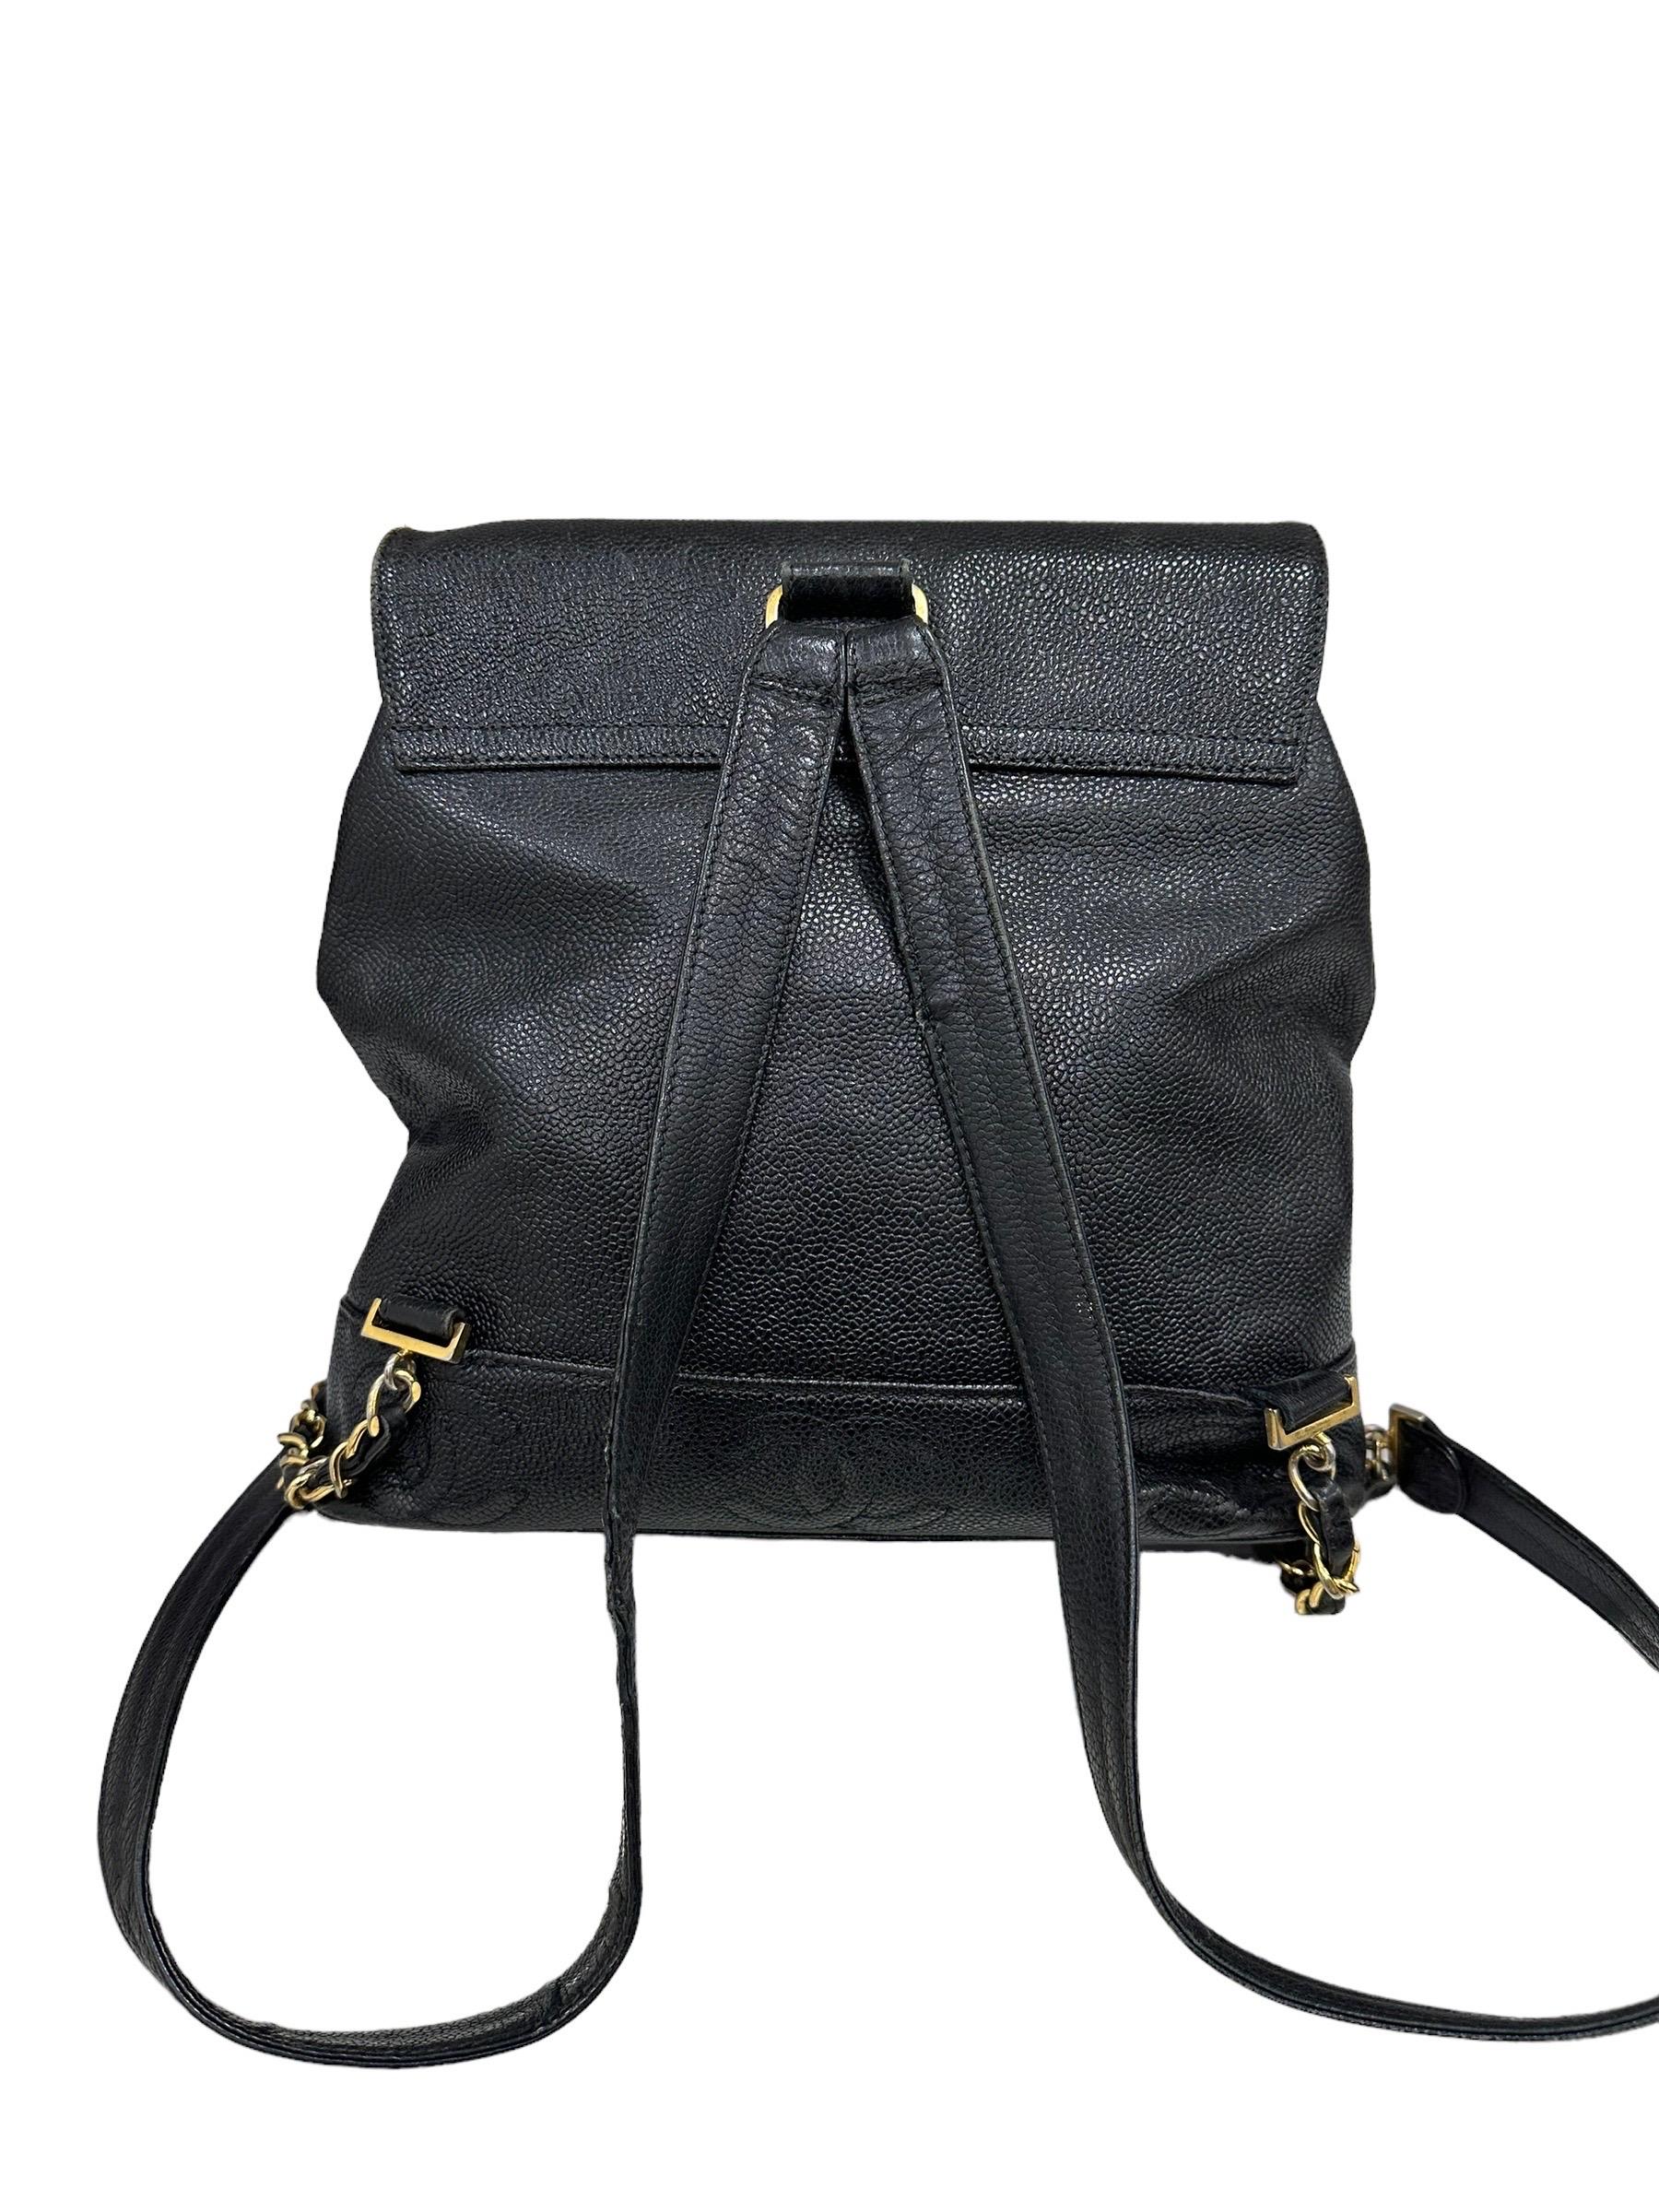 1997 Chanel Black Leather Vintage Backpack  3